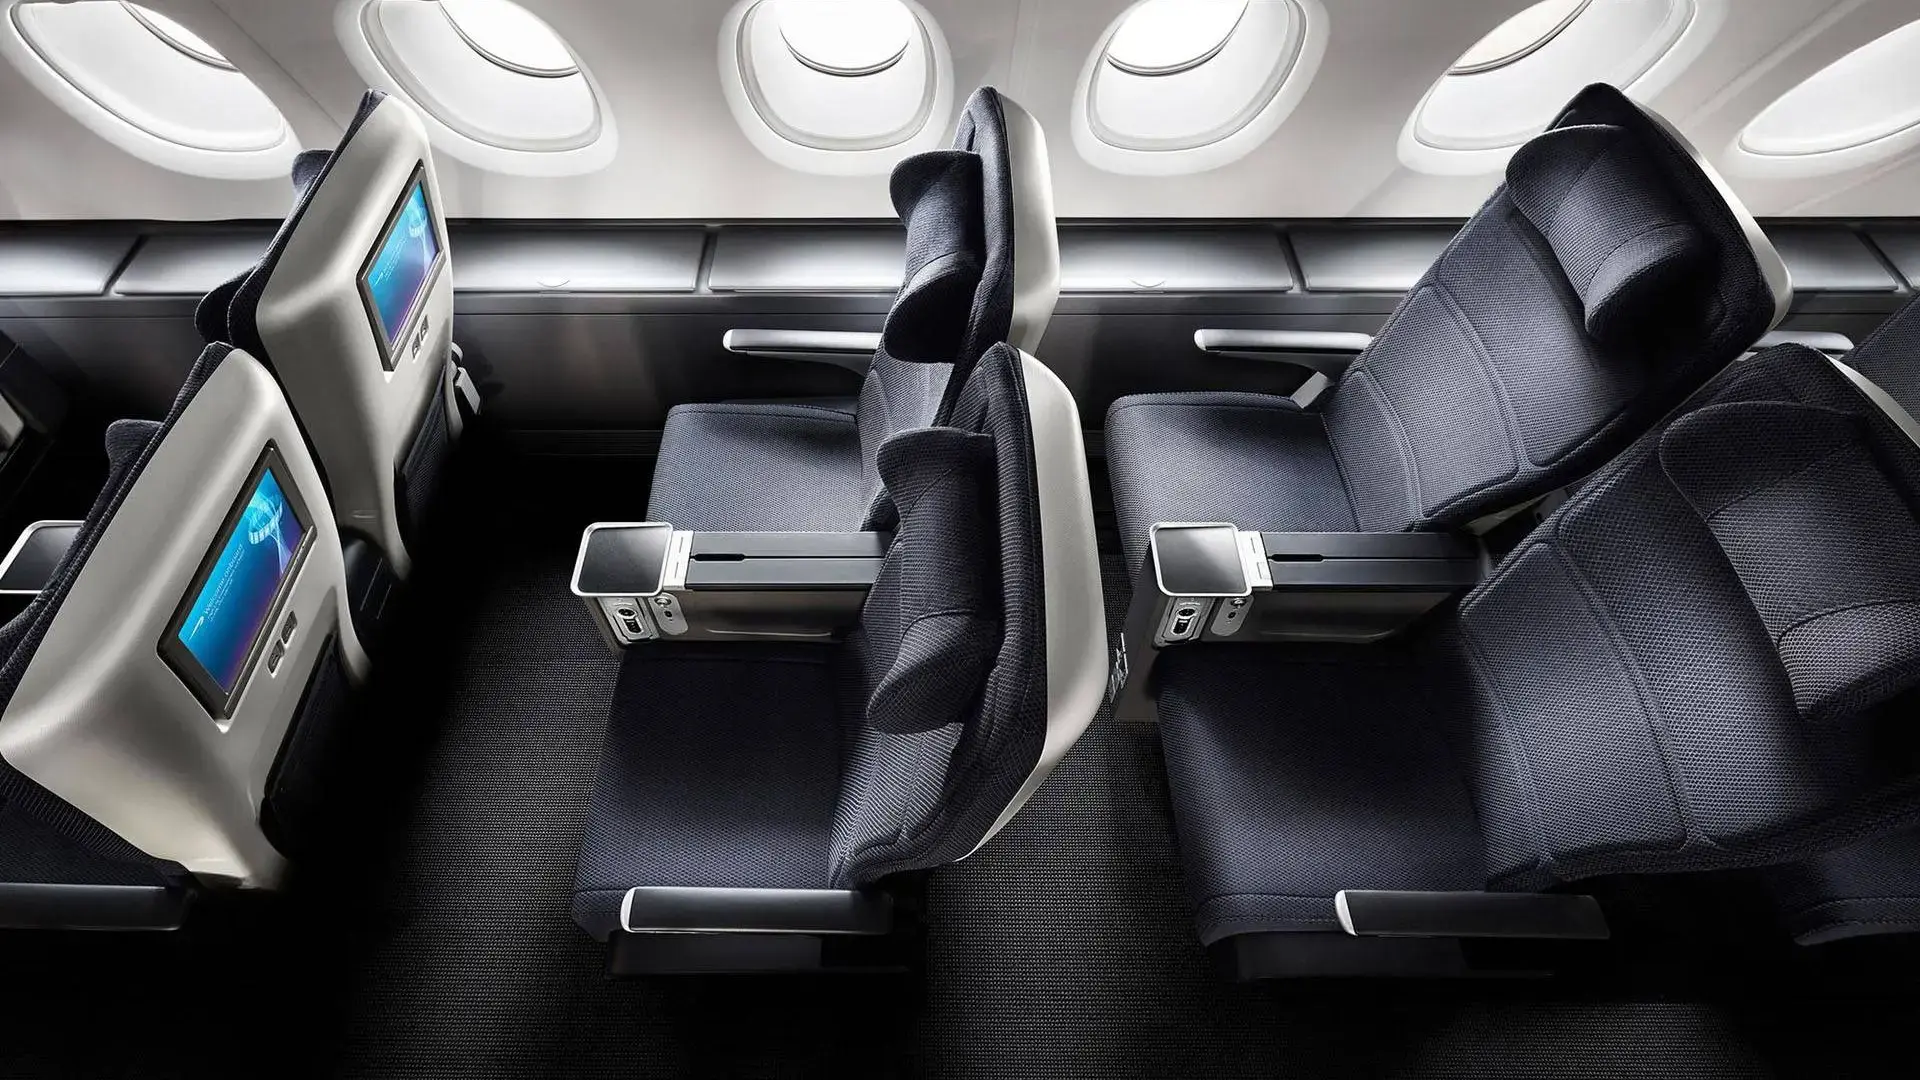 British Airways Premium Economy seats